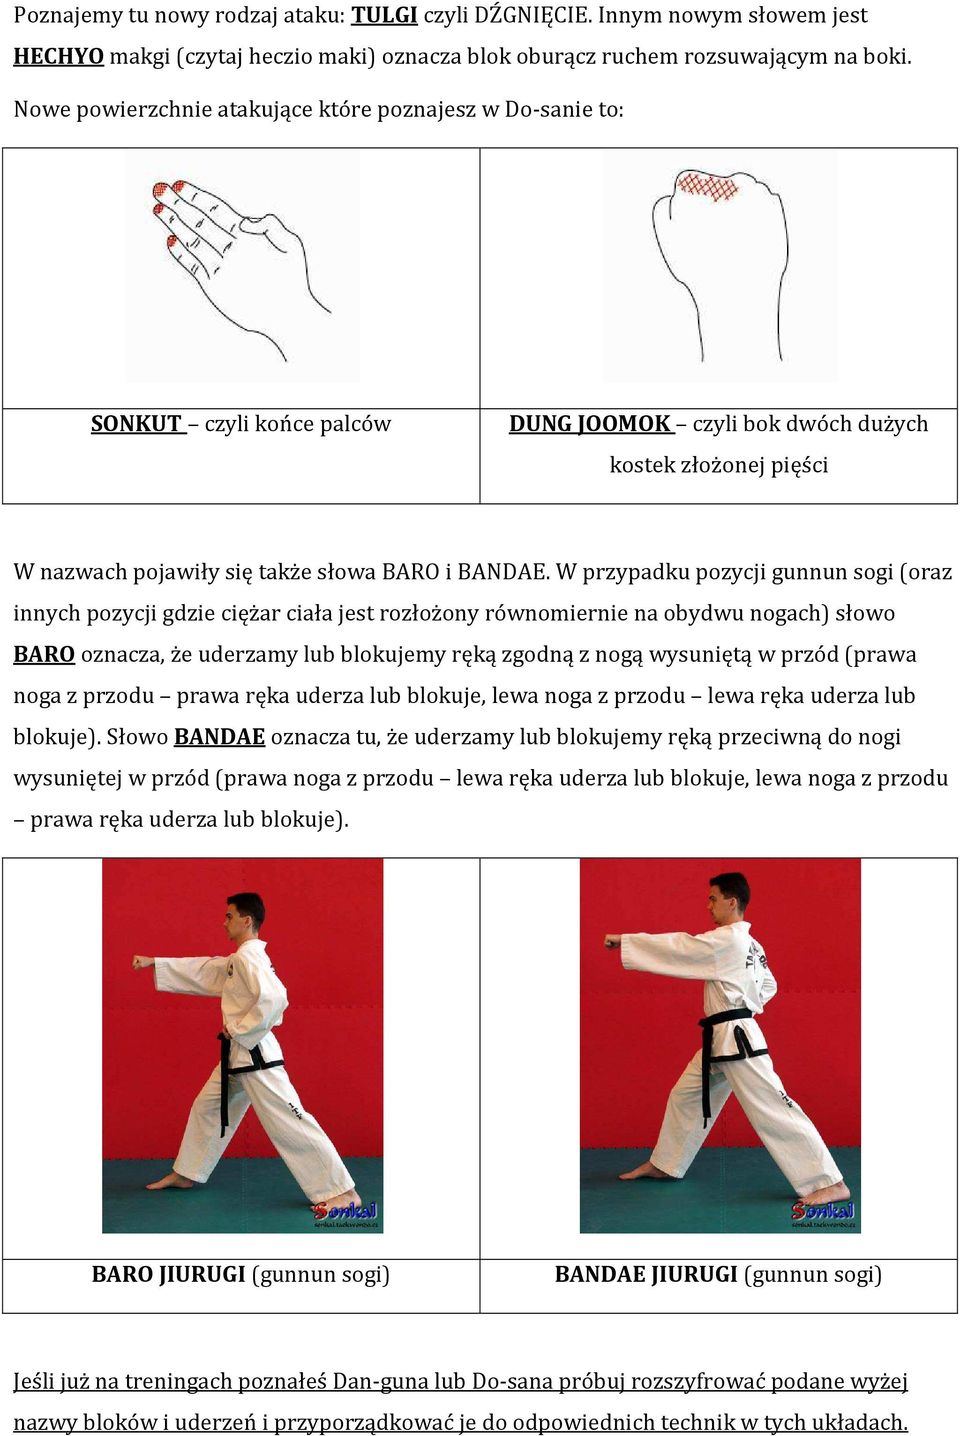 W przypadku pozycji gunnun sogi (oraz innych pozycji gdzie ciężar ciała jest rozłożony równomiernie na obydwu nogach) słowo BARO oznacza, że uderzamy lub blokujemy ręką zgodną z nogą wysuniętą w